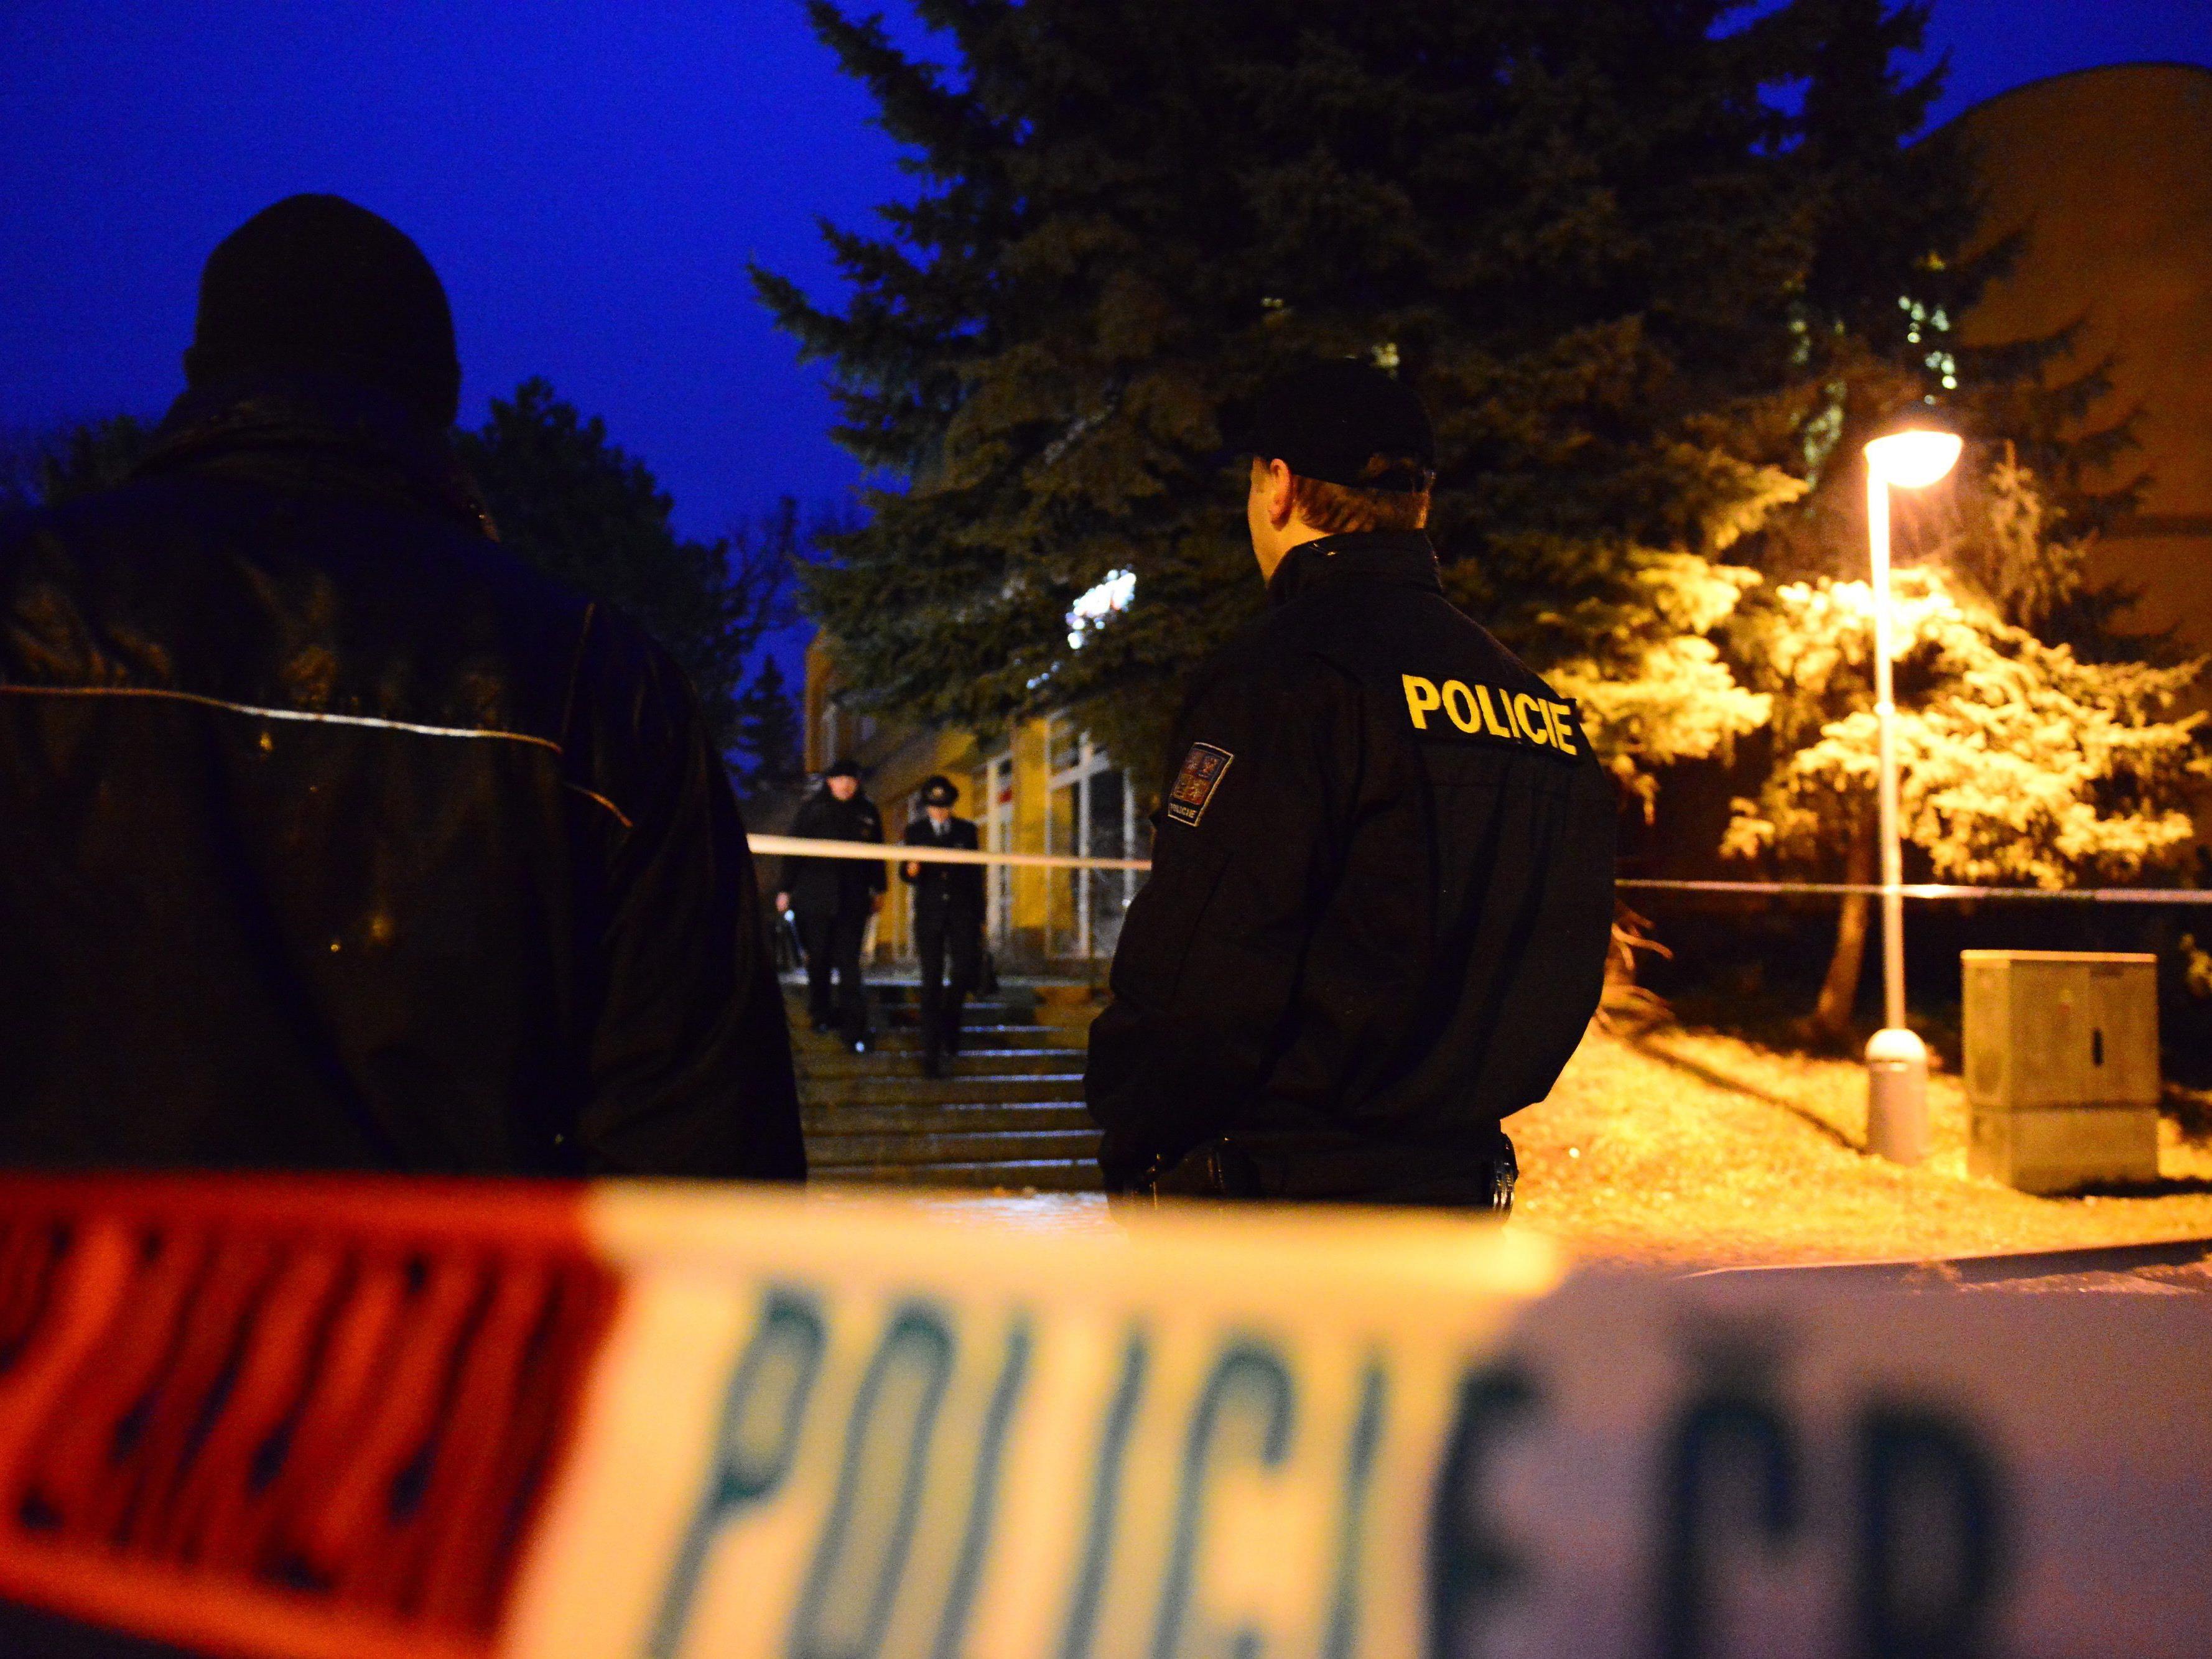 Tschechien: Kleinstadt Uhersky Brod nach Amoklauf mit neuen Toten steht unter Schock